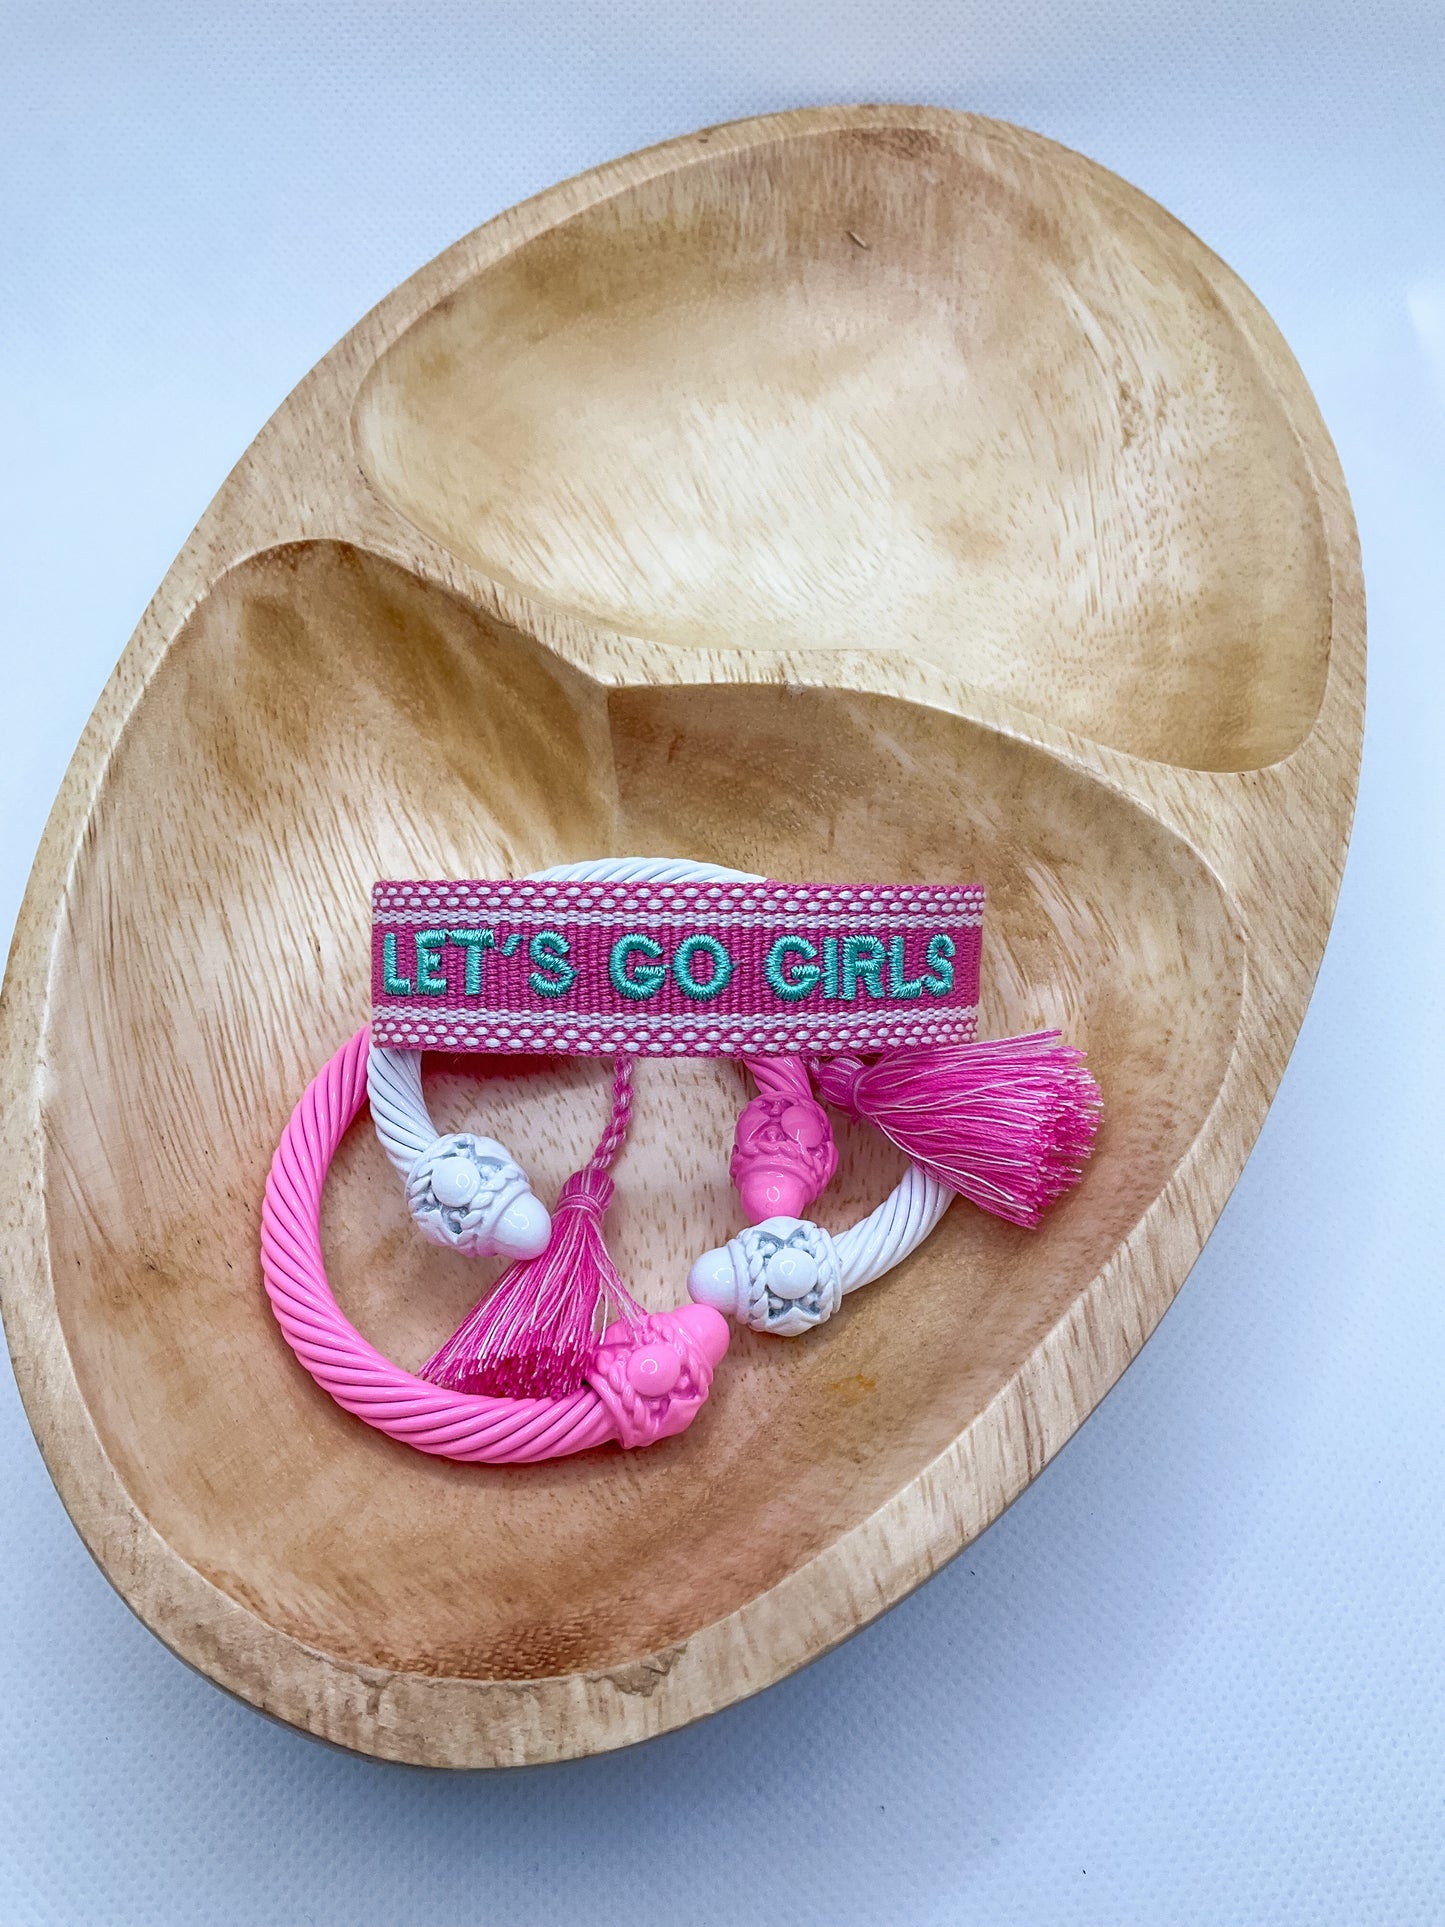 G+G Threads - Woven Bracelets - Let’s Go Girls